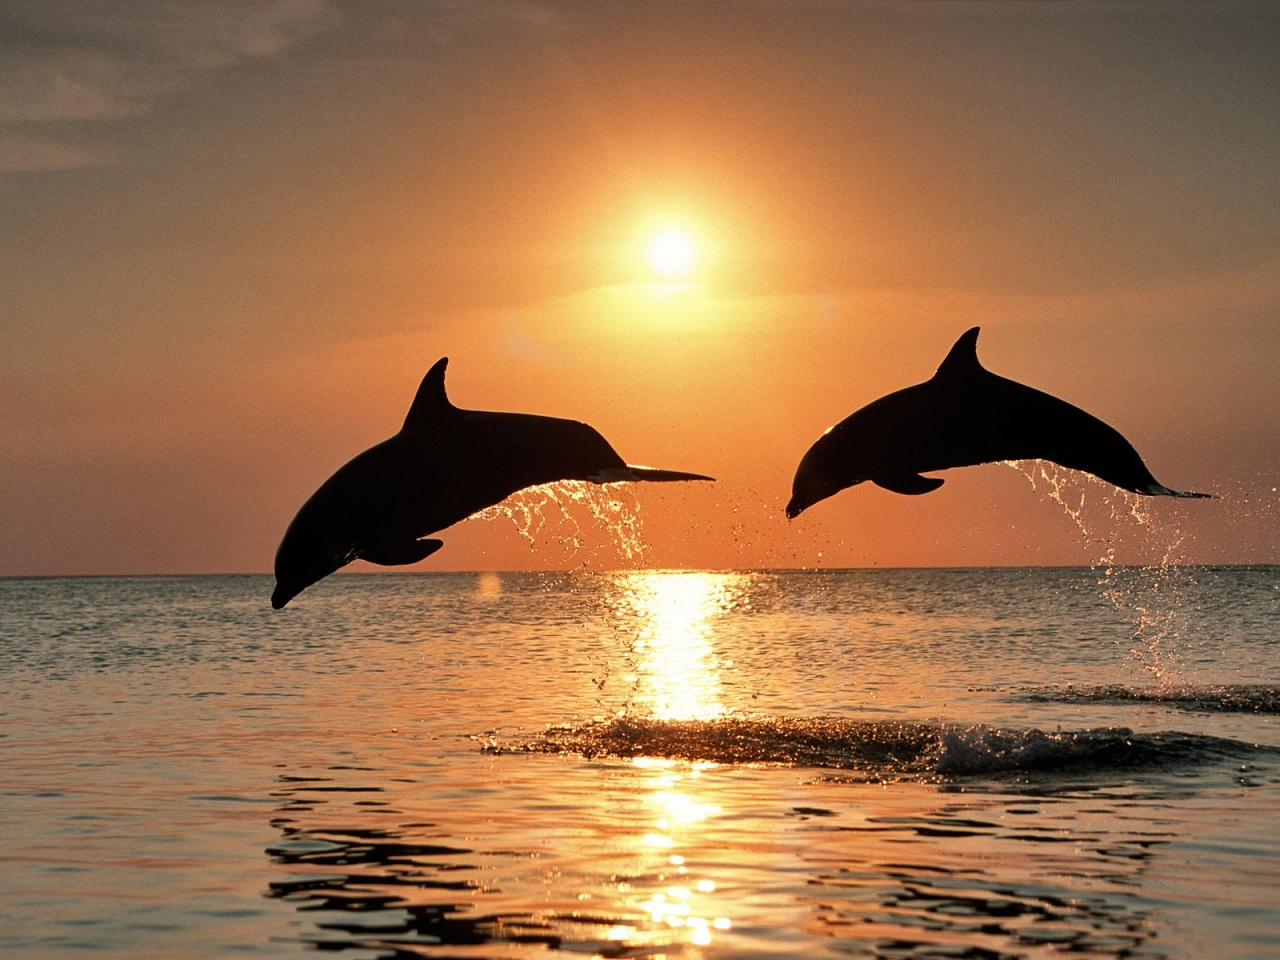 http://3.bp.blogspot.com/-gutIUC6hqaA/T2HwIqcFy4I/AAAAAAAABmY/O5e-4ZAXAaQ/s1600/bottlenose+dolphins+sunset.jpg